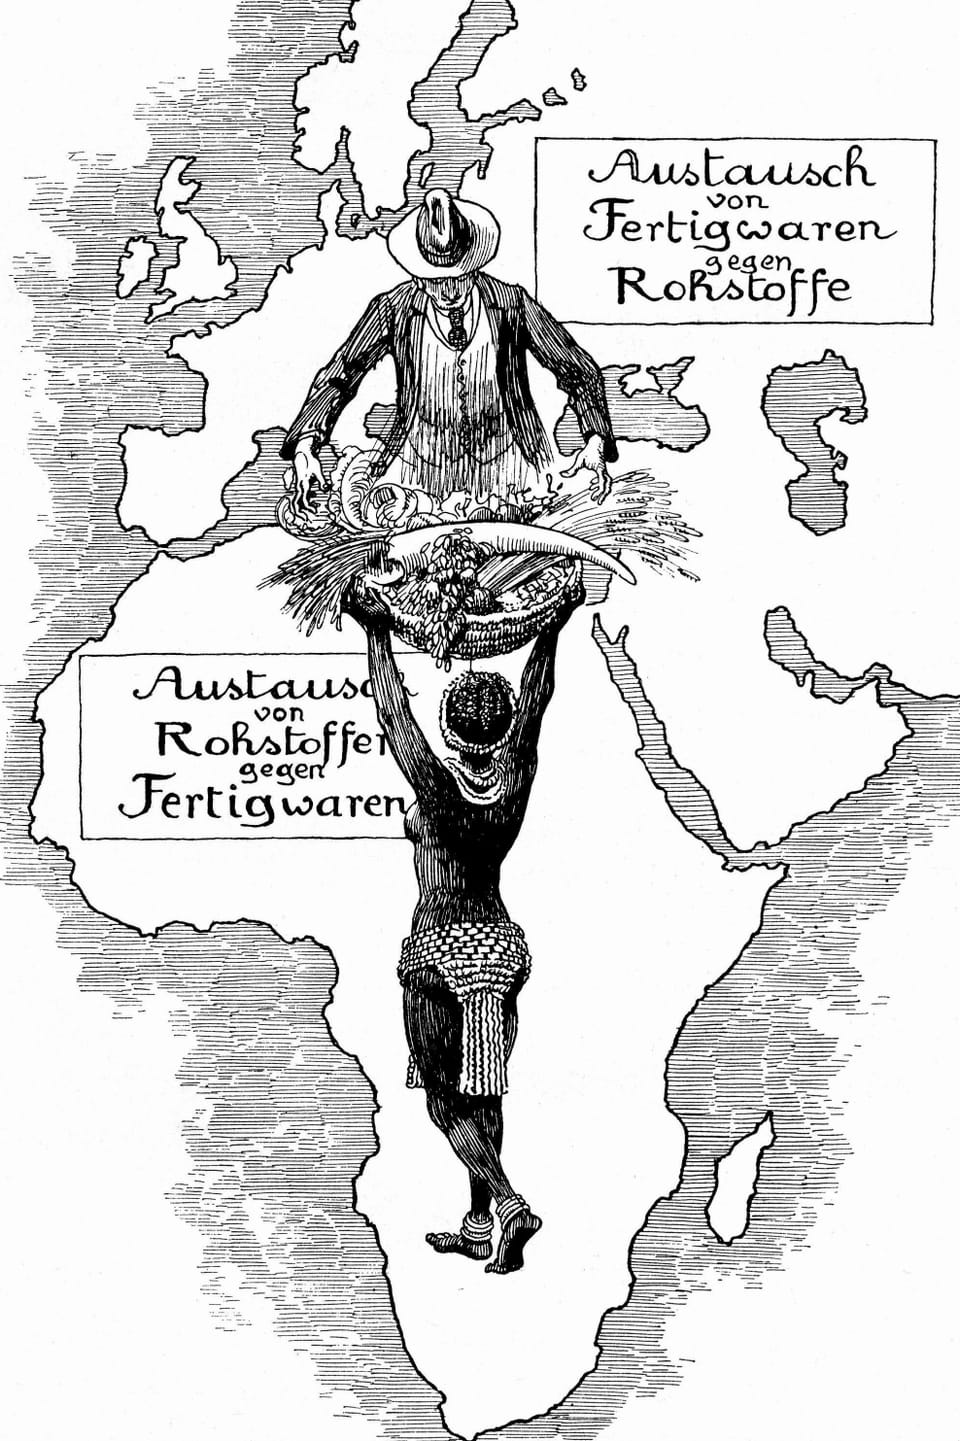 Schwarz-Weiss Karte mit einer indigenen Bewohnerin Afrikas (von hinten) mit einem Gabenkorb, über ihr ein Mann mit Anzug